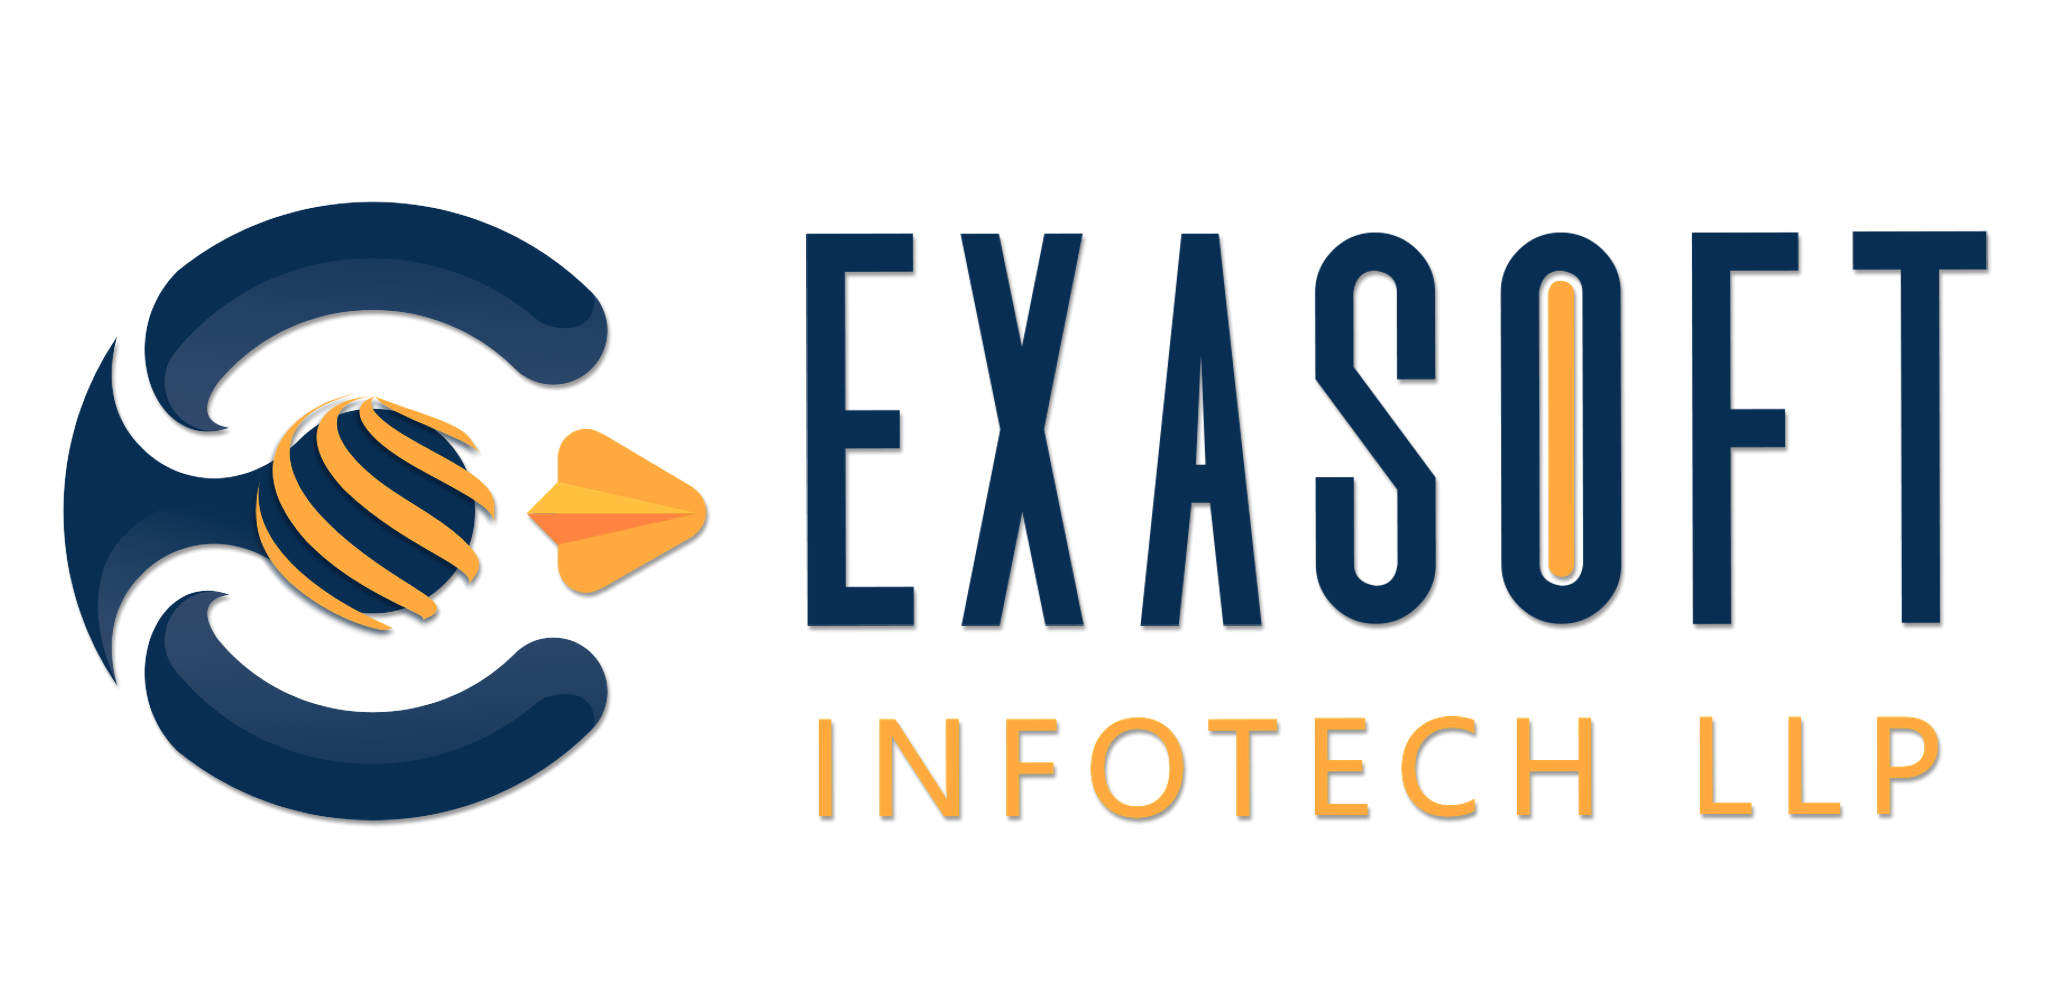 ExaSoft Infotech LLP